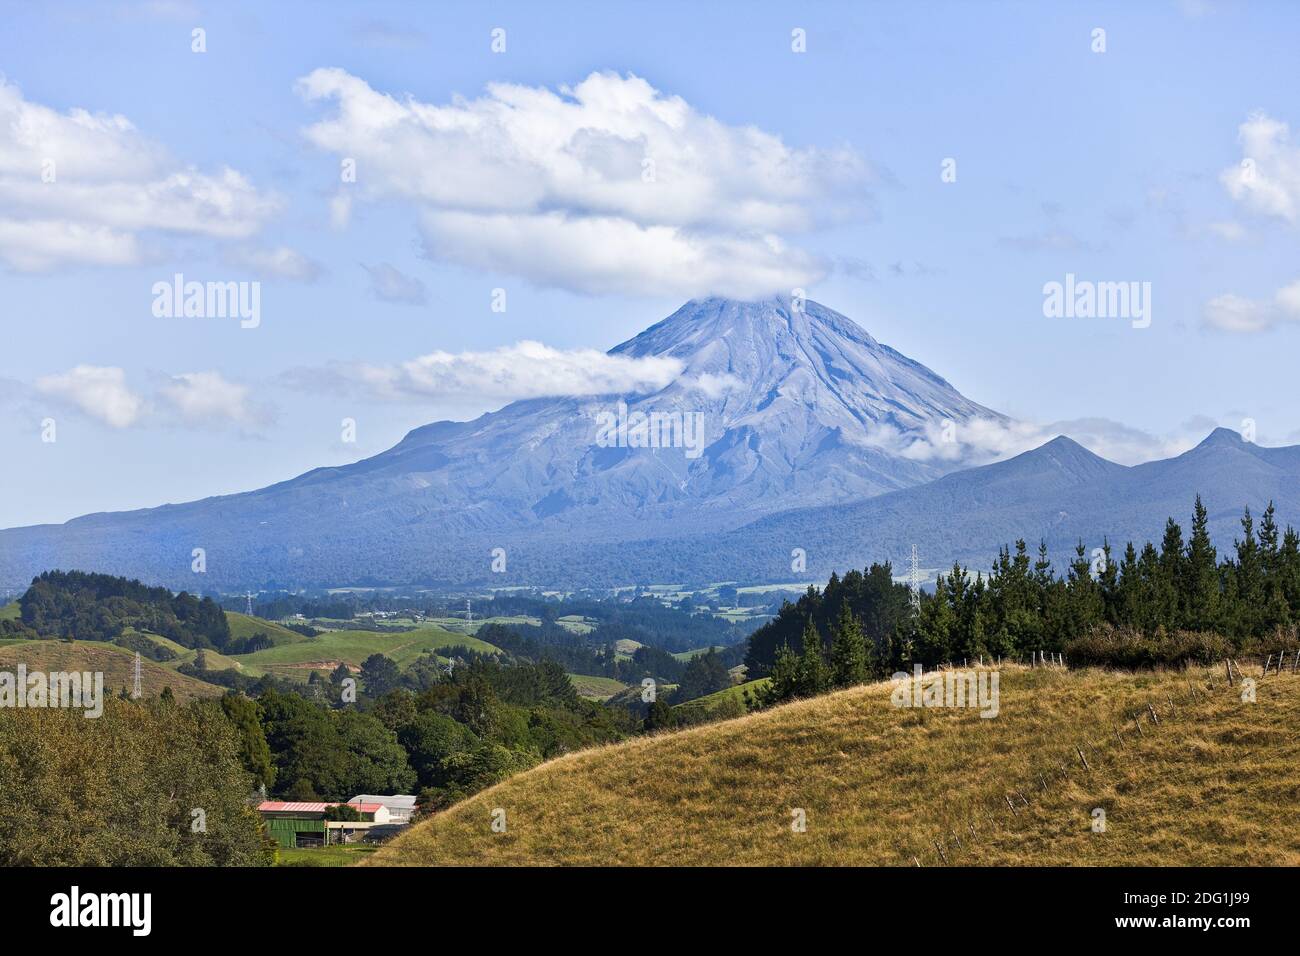 Mount taranaki; NEUSEELAND Stock Photo